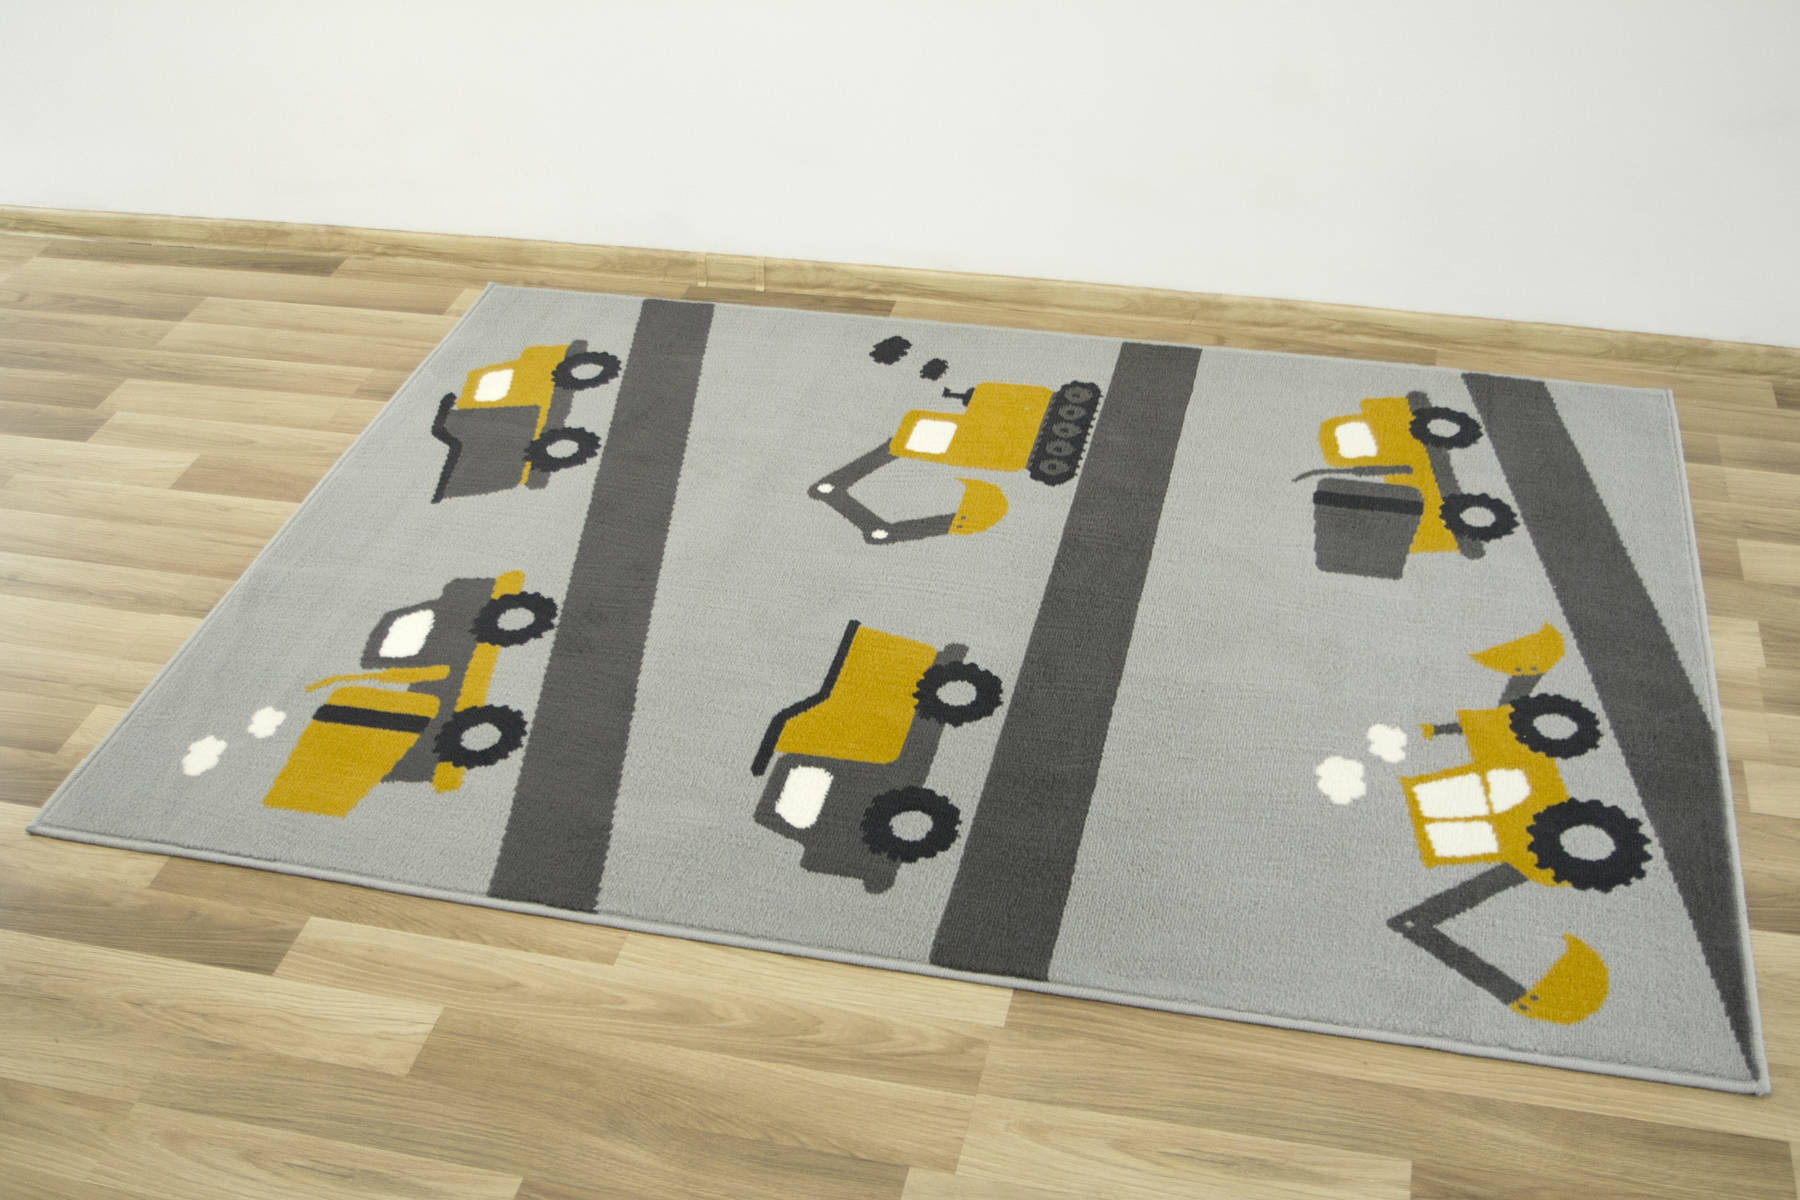 Detský koberec LUNA 534458/89945 -Nákladné autičká, sivý